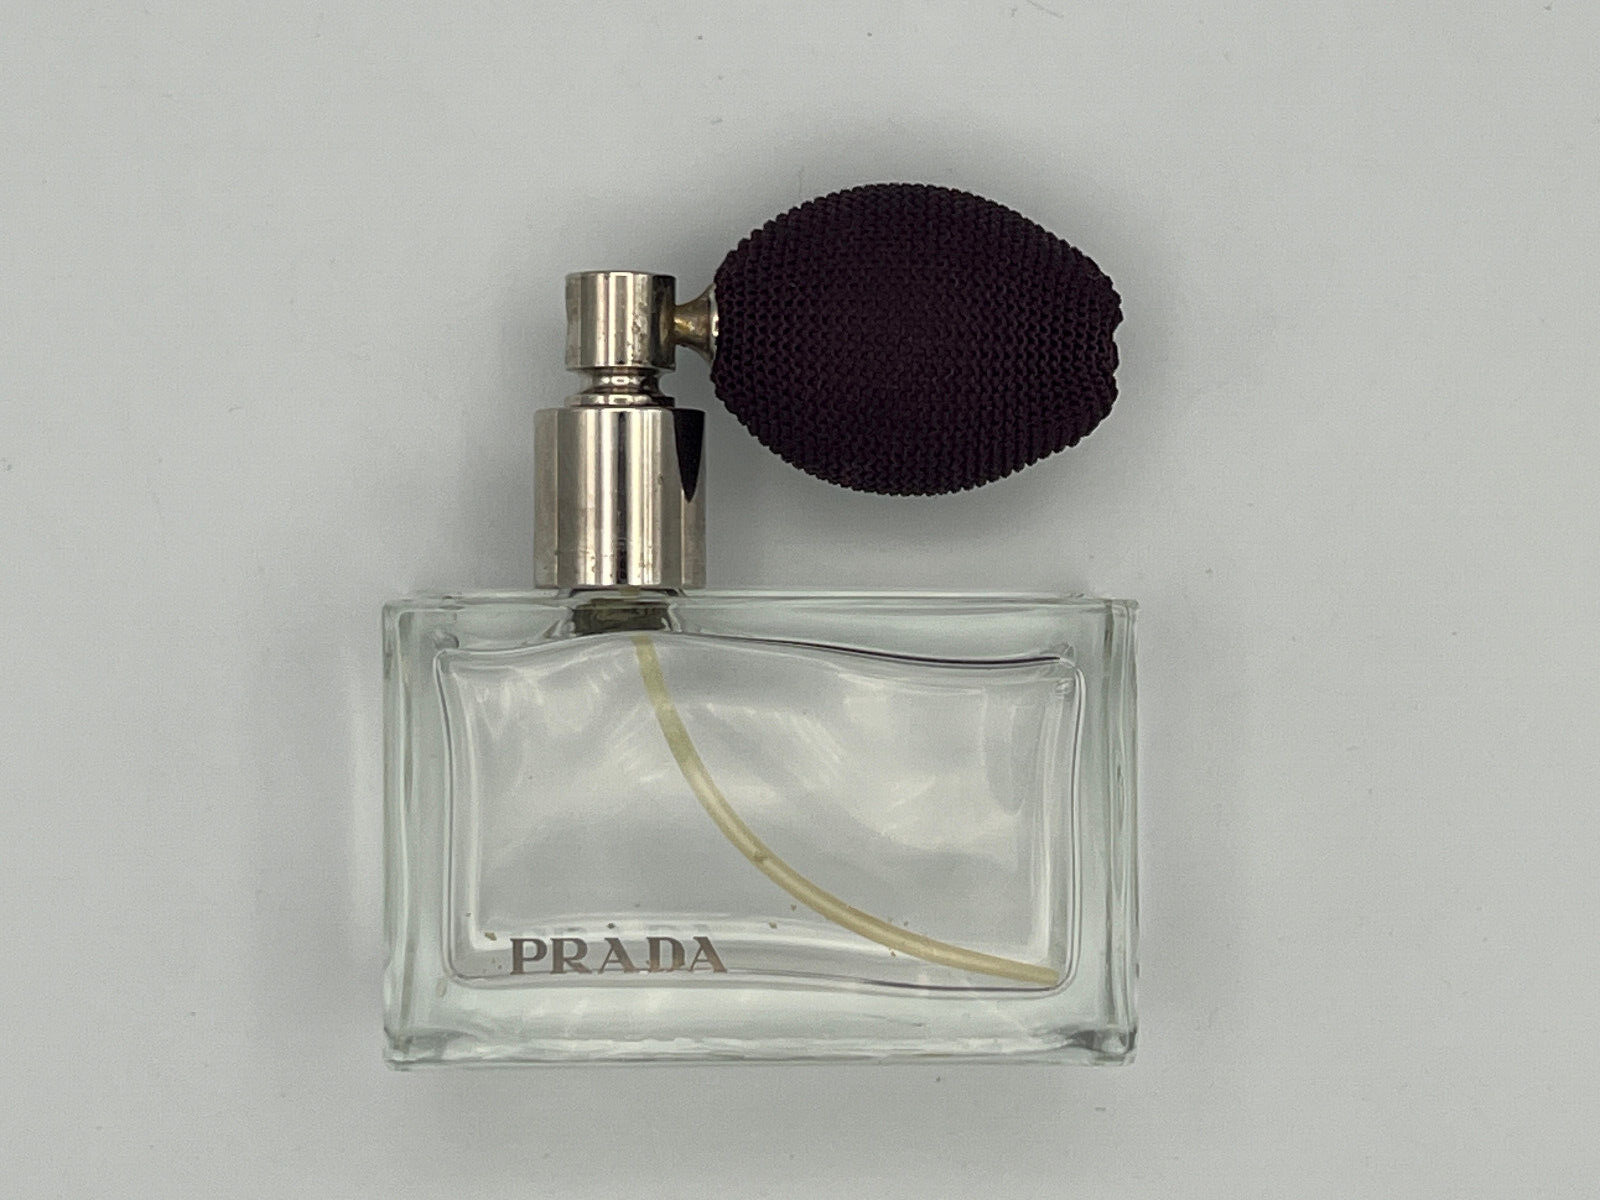 Vintage Prada Eau De Parfum Bottle w/ Atomizer Bottle Only - Empty